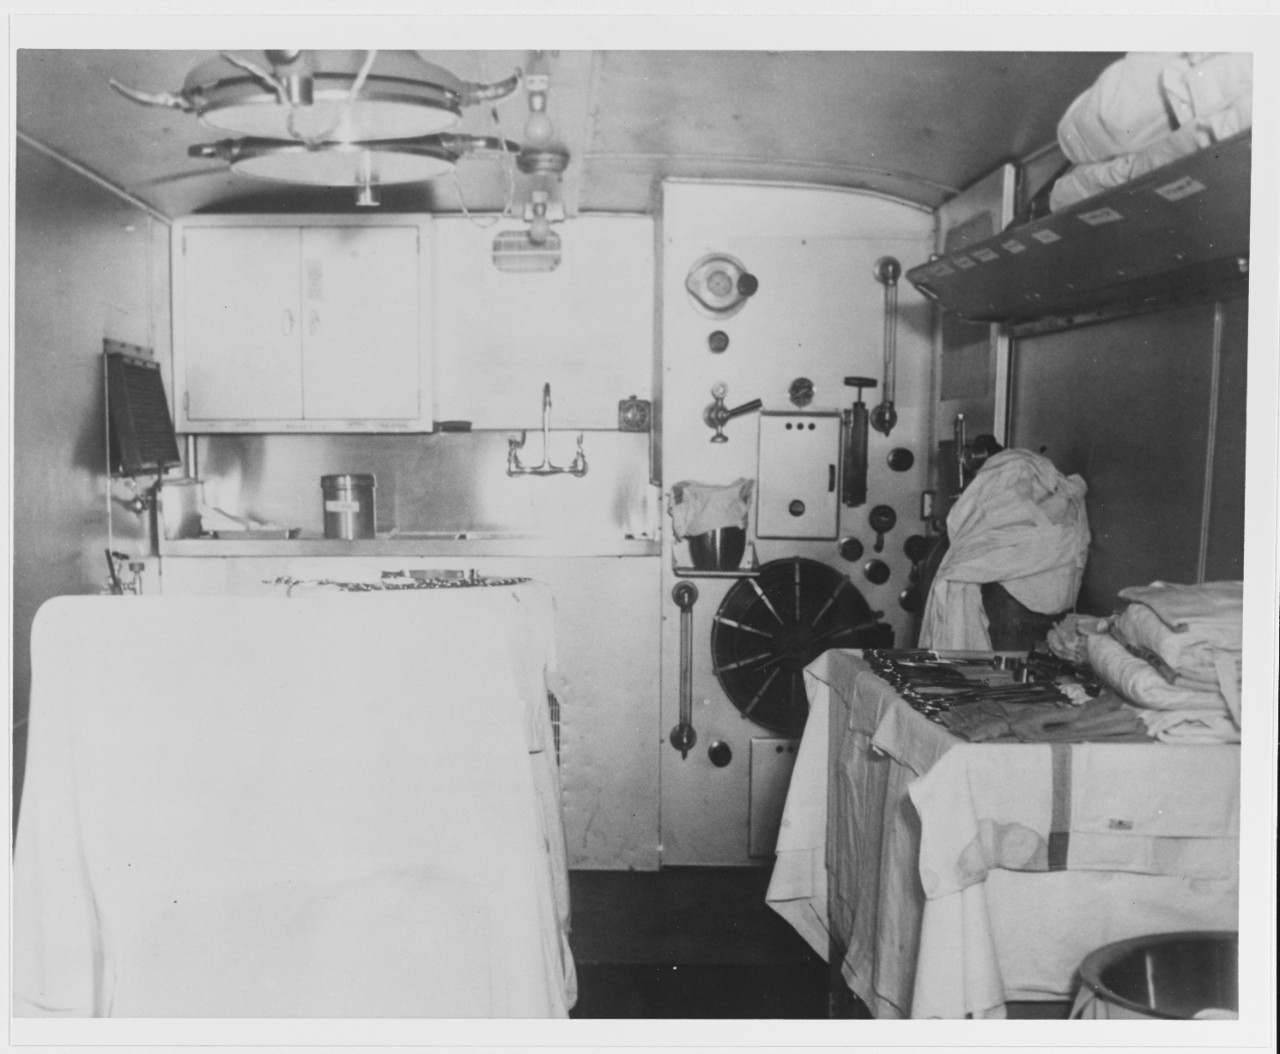 Mobile medical unit interior